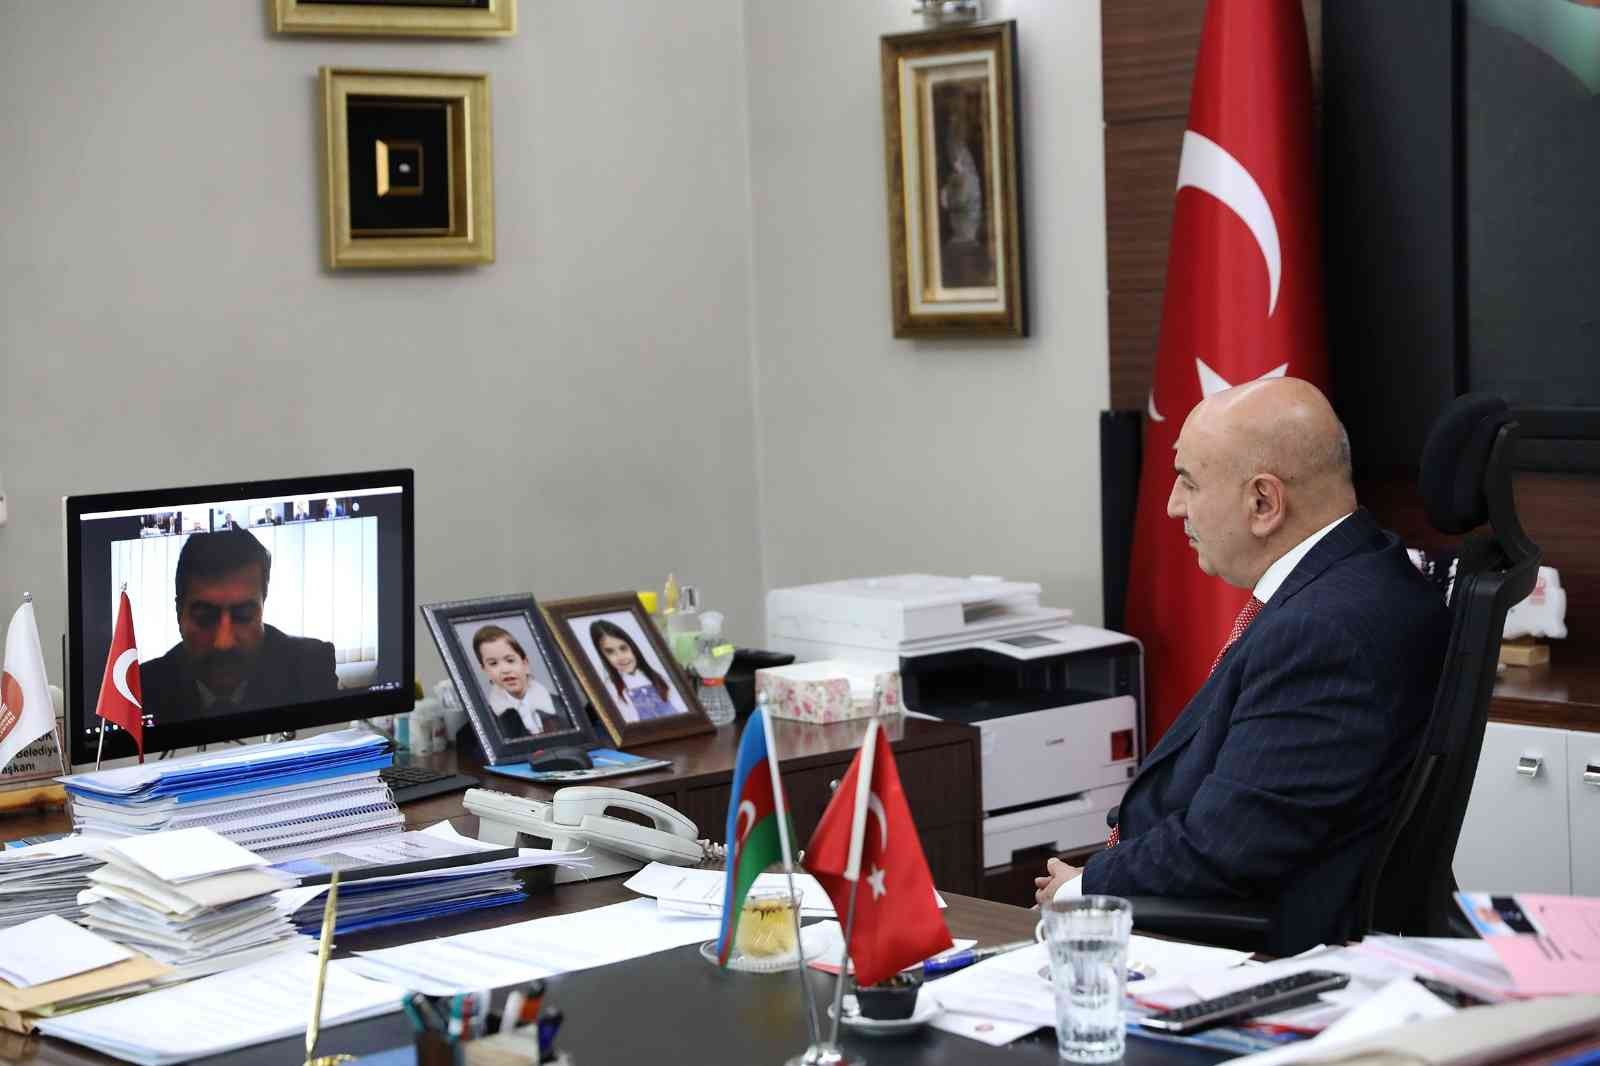 Başkan Altınok, telekonferansla Azerbaycanlı başkanlarla buluştu #ankara